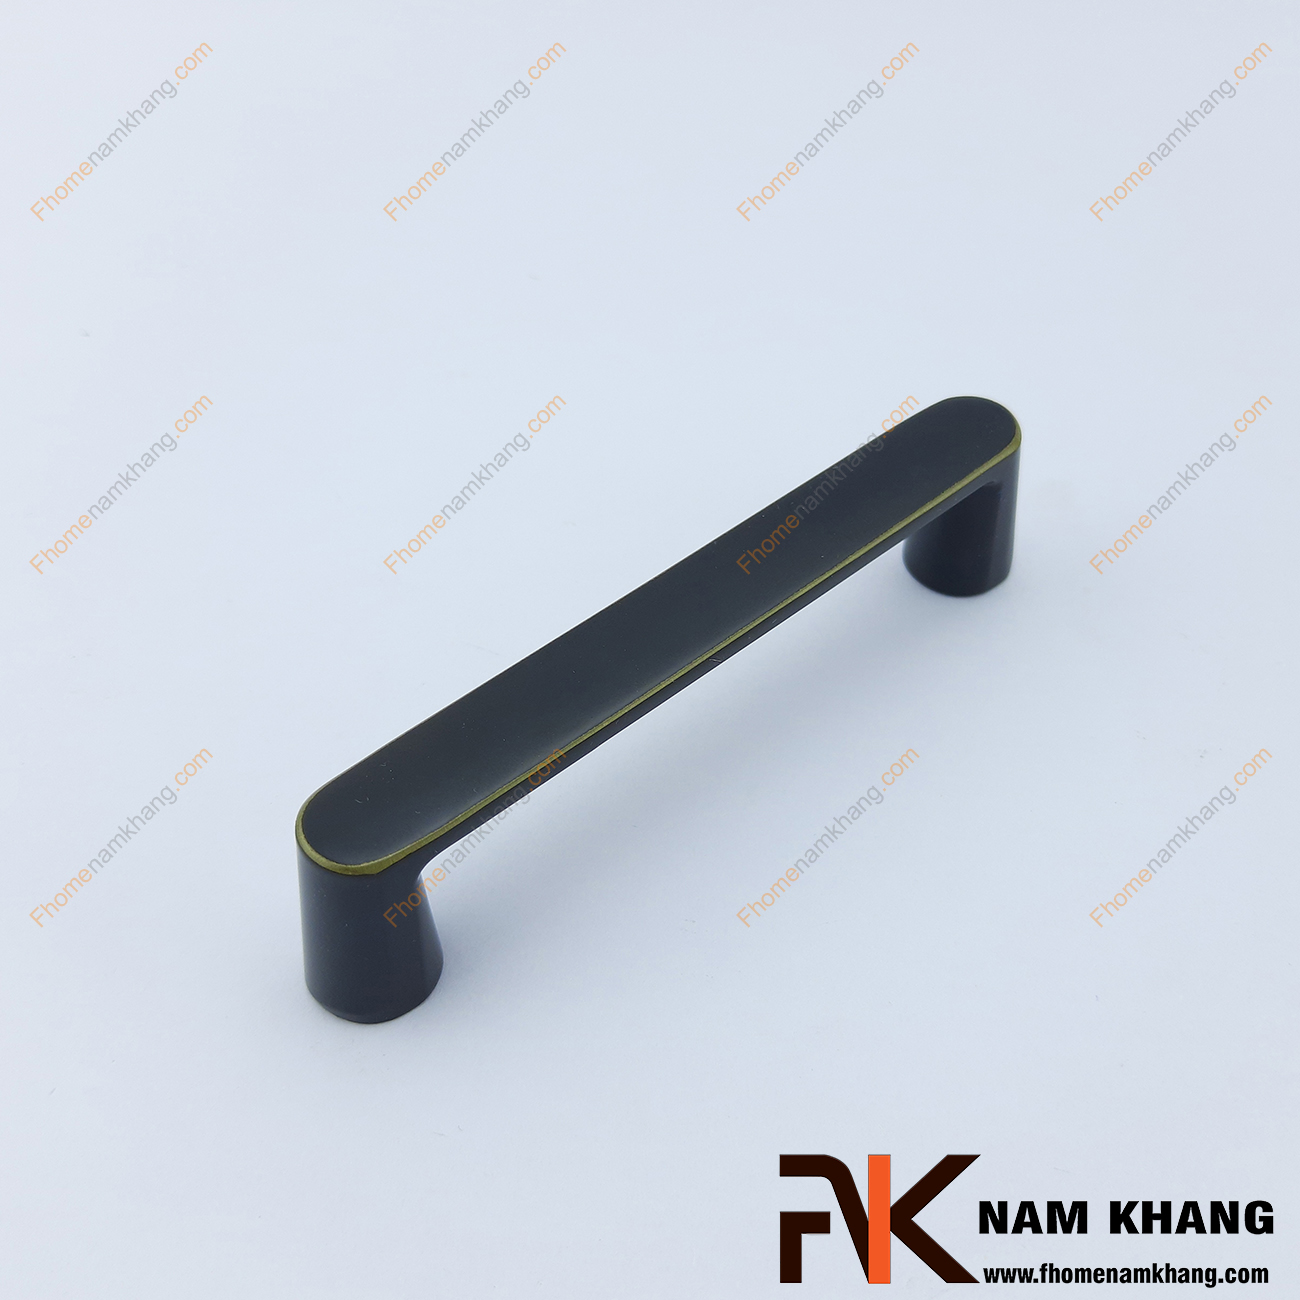 Tay nắm tủ dạng thanh dẹp màu đen viền vàng NK421-DV có thiết kế đơn giản với phần thân dẹp và phần đế hình bán trụ ở hai đầu của tay nắm